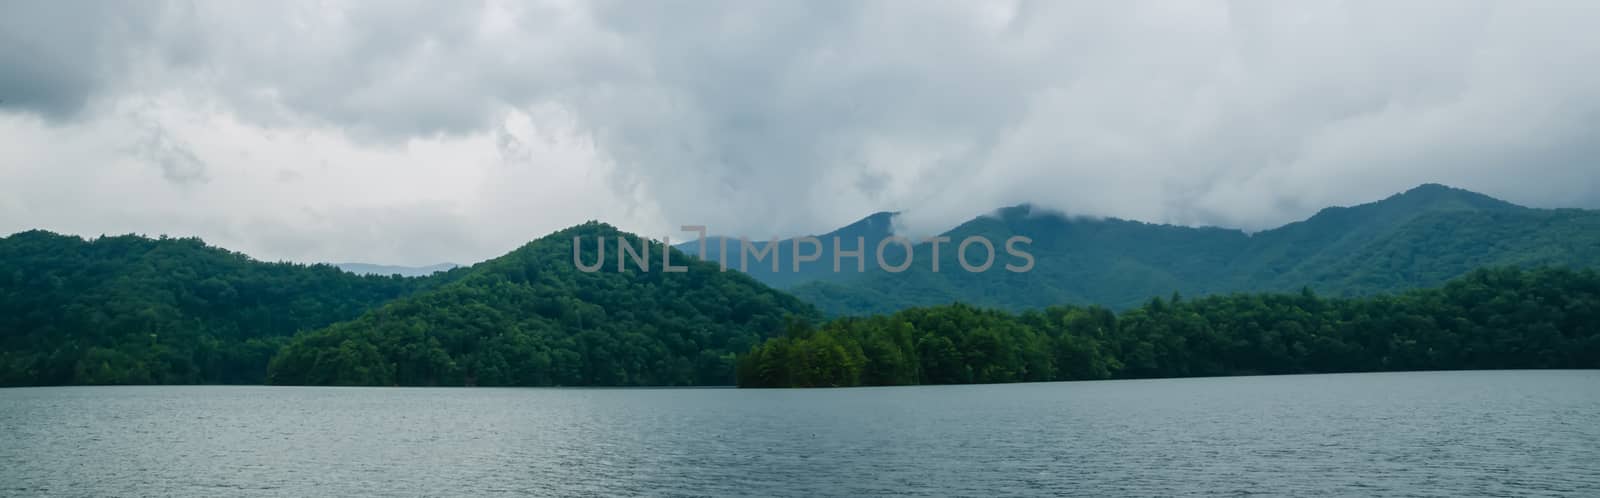 lake santeetlah in great smoky mountains